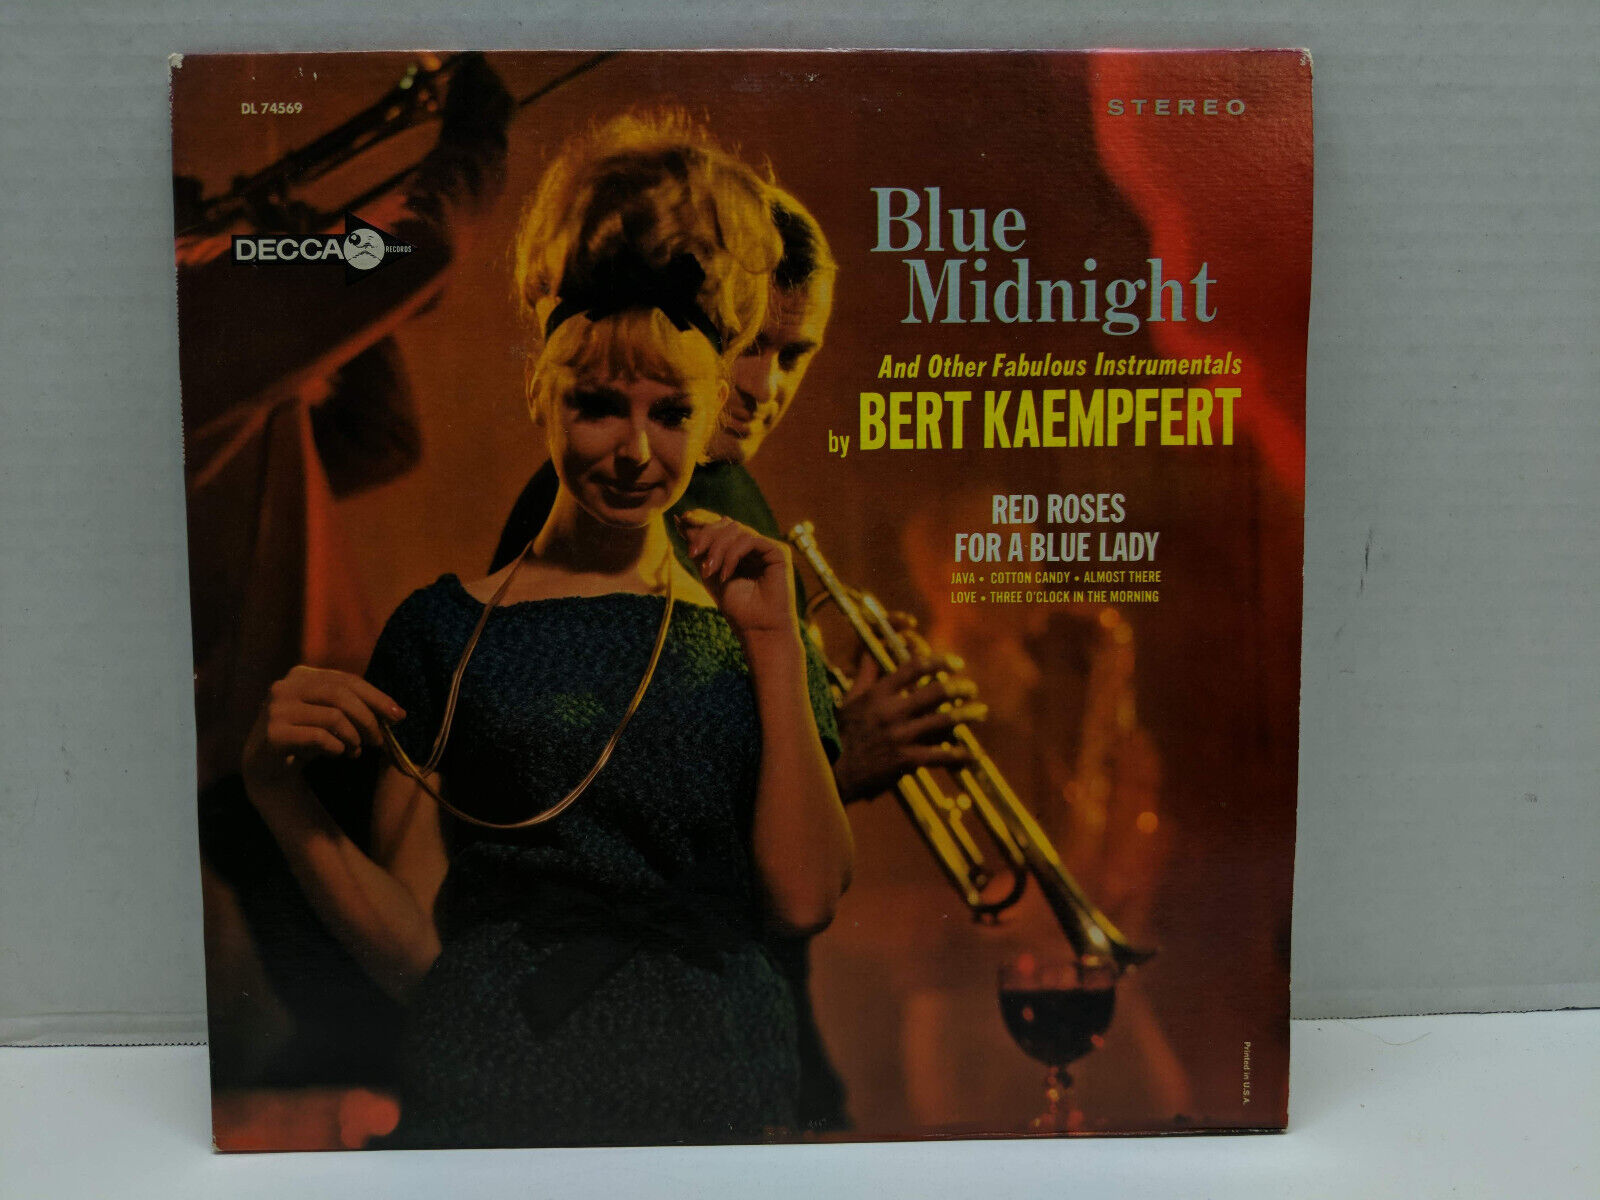 Bert Kaempfert - Blue Midnight - Decca DL 74569 Vinyl Record